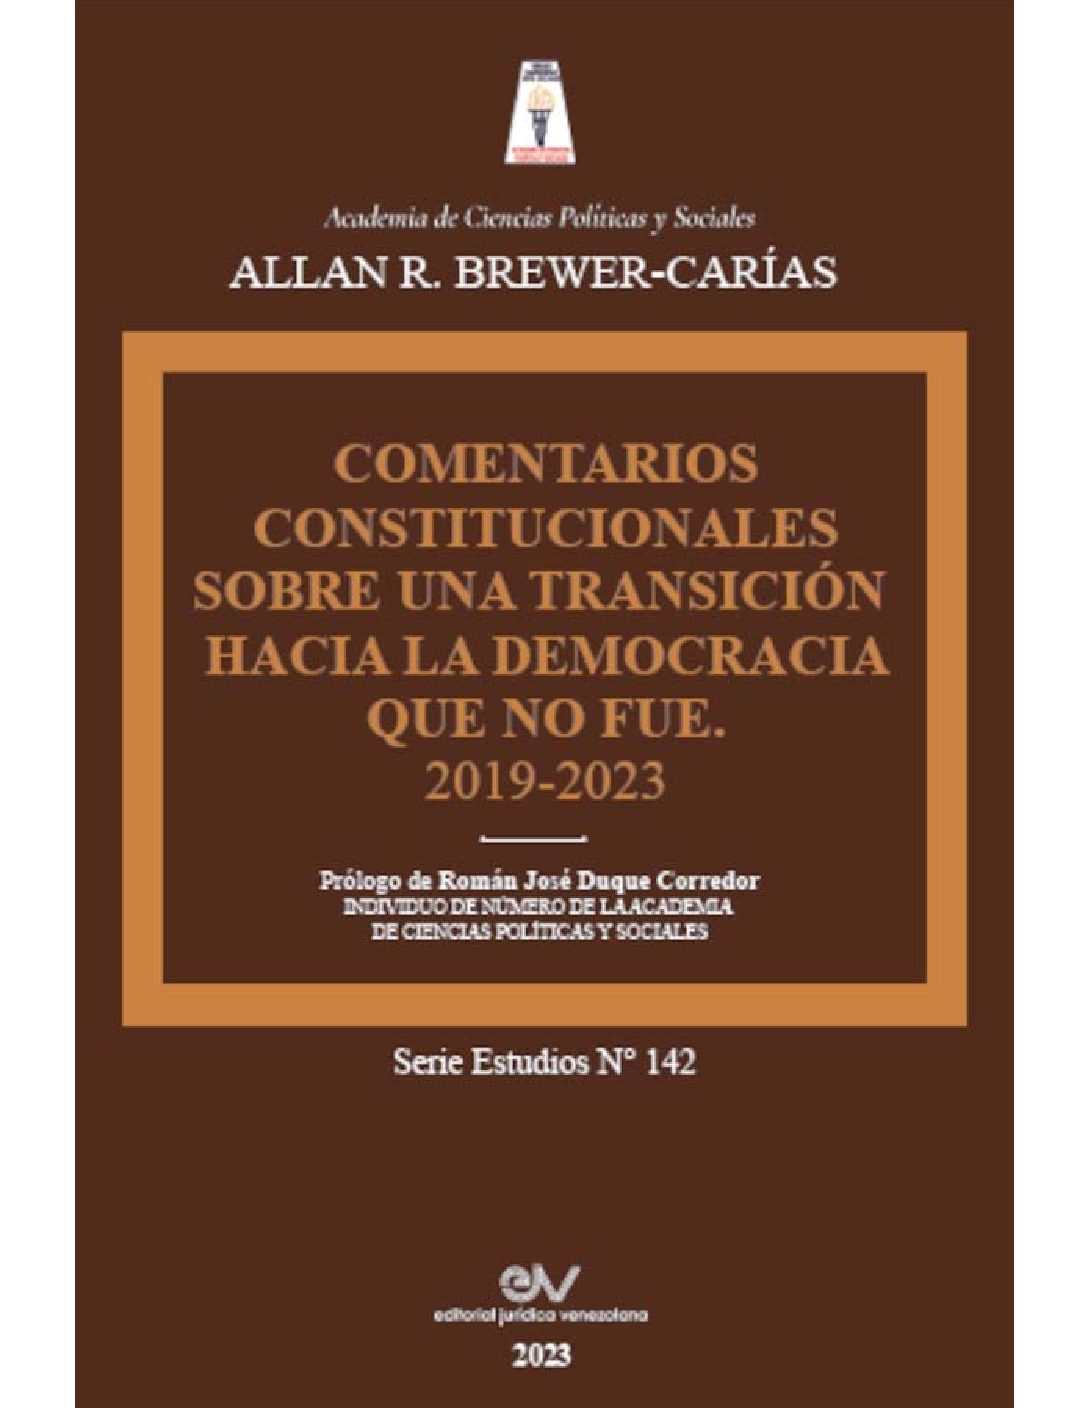 Disponible a texto completo el libro: Comentarios constitucionales sobre una transición hacia la democracia que no fue 2019-2023. Autor: Allan R. Brewer-Carías